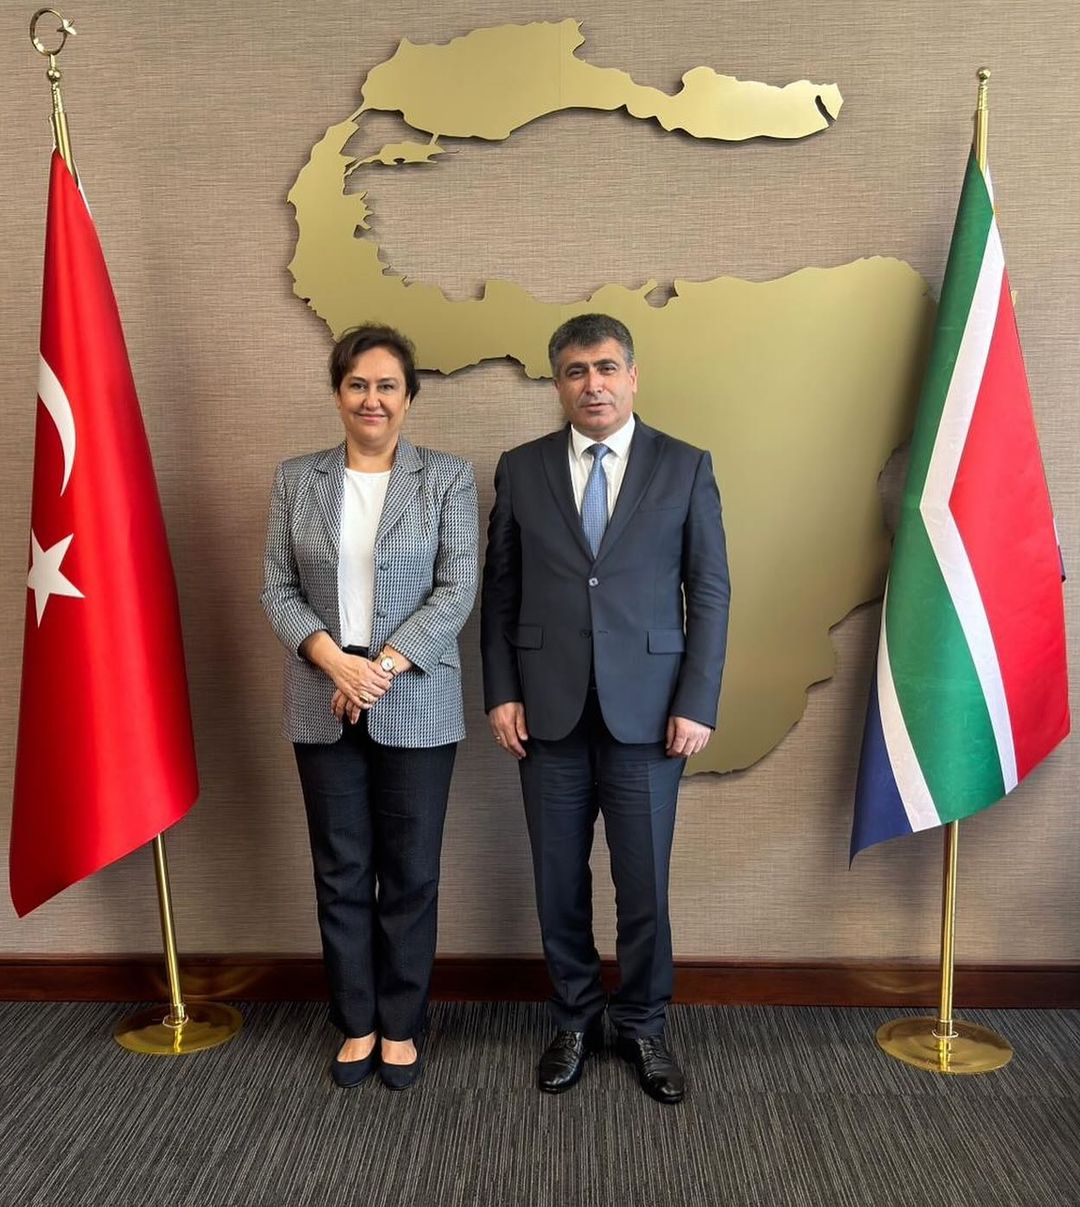 Nevşehir Hacı Bektaş Veli Üniversitesi Rektörü Prof. Dr. Semih Aktekin, Türkiye Cumhuriyeti Pretorya Büyükelçisi Ayşegül Kandaş’ı ziyaret etti